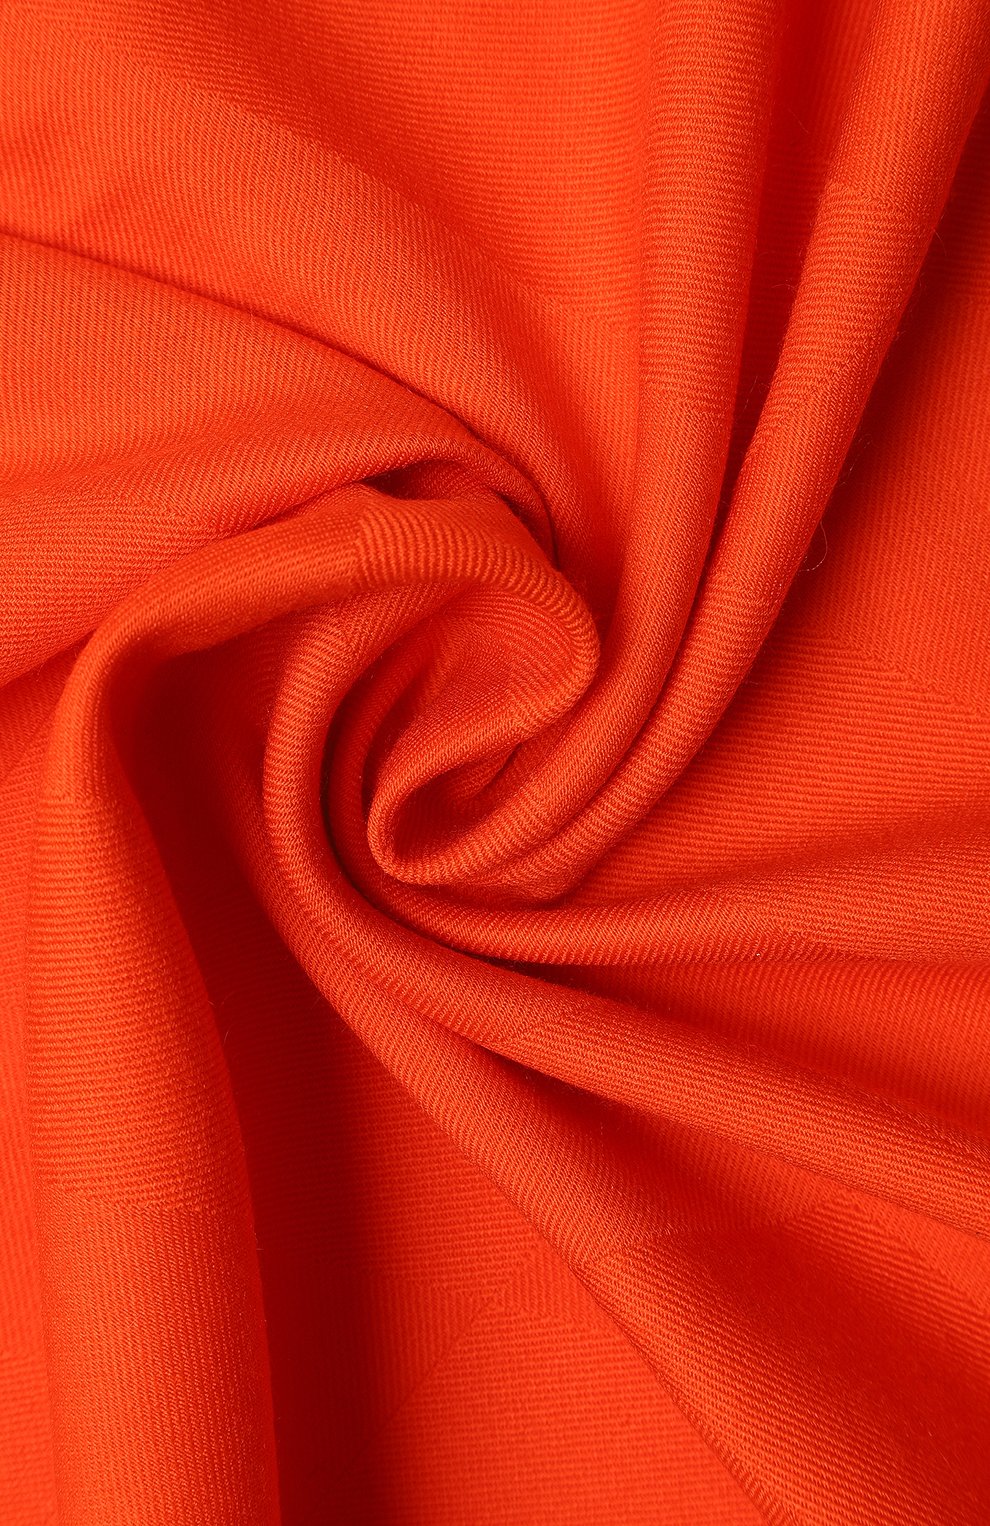 Шарф из кашемира и шелка | Hermes | Оранжевый - 2